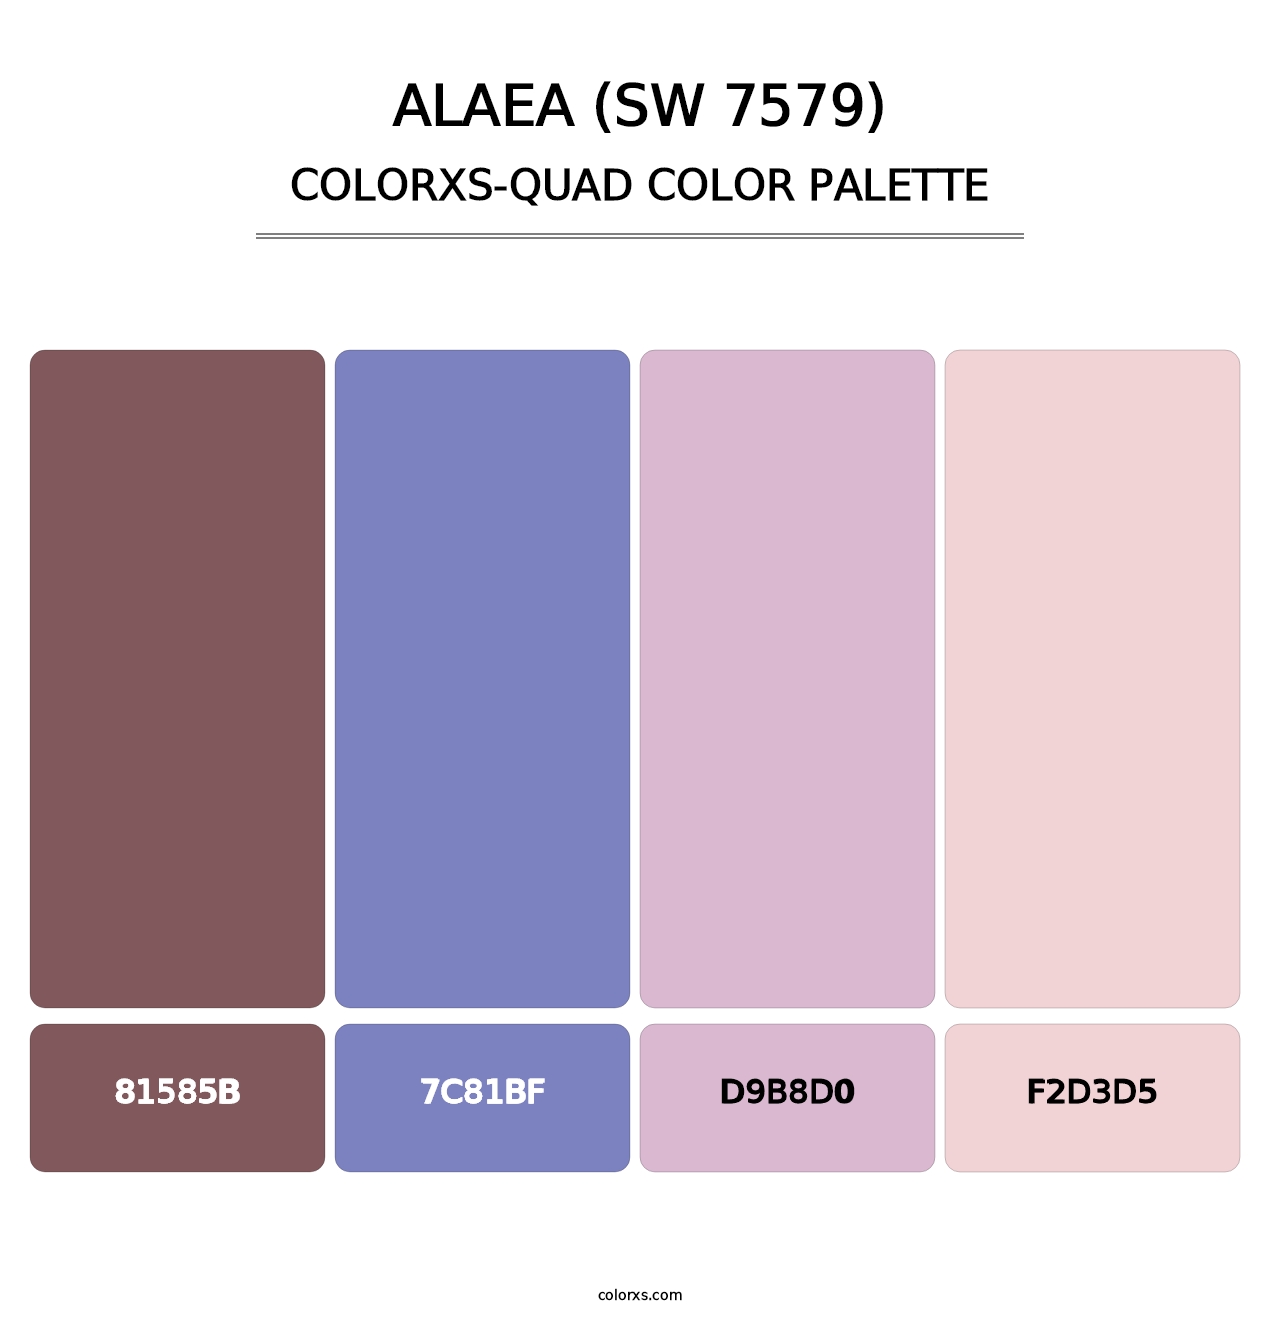 Alaea (SW 7579) - Colorxs Quad Palette